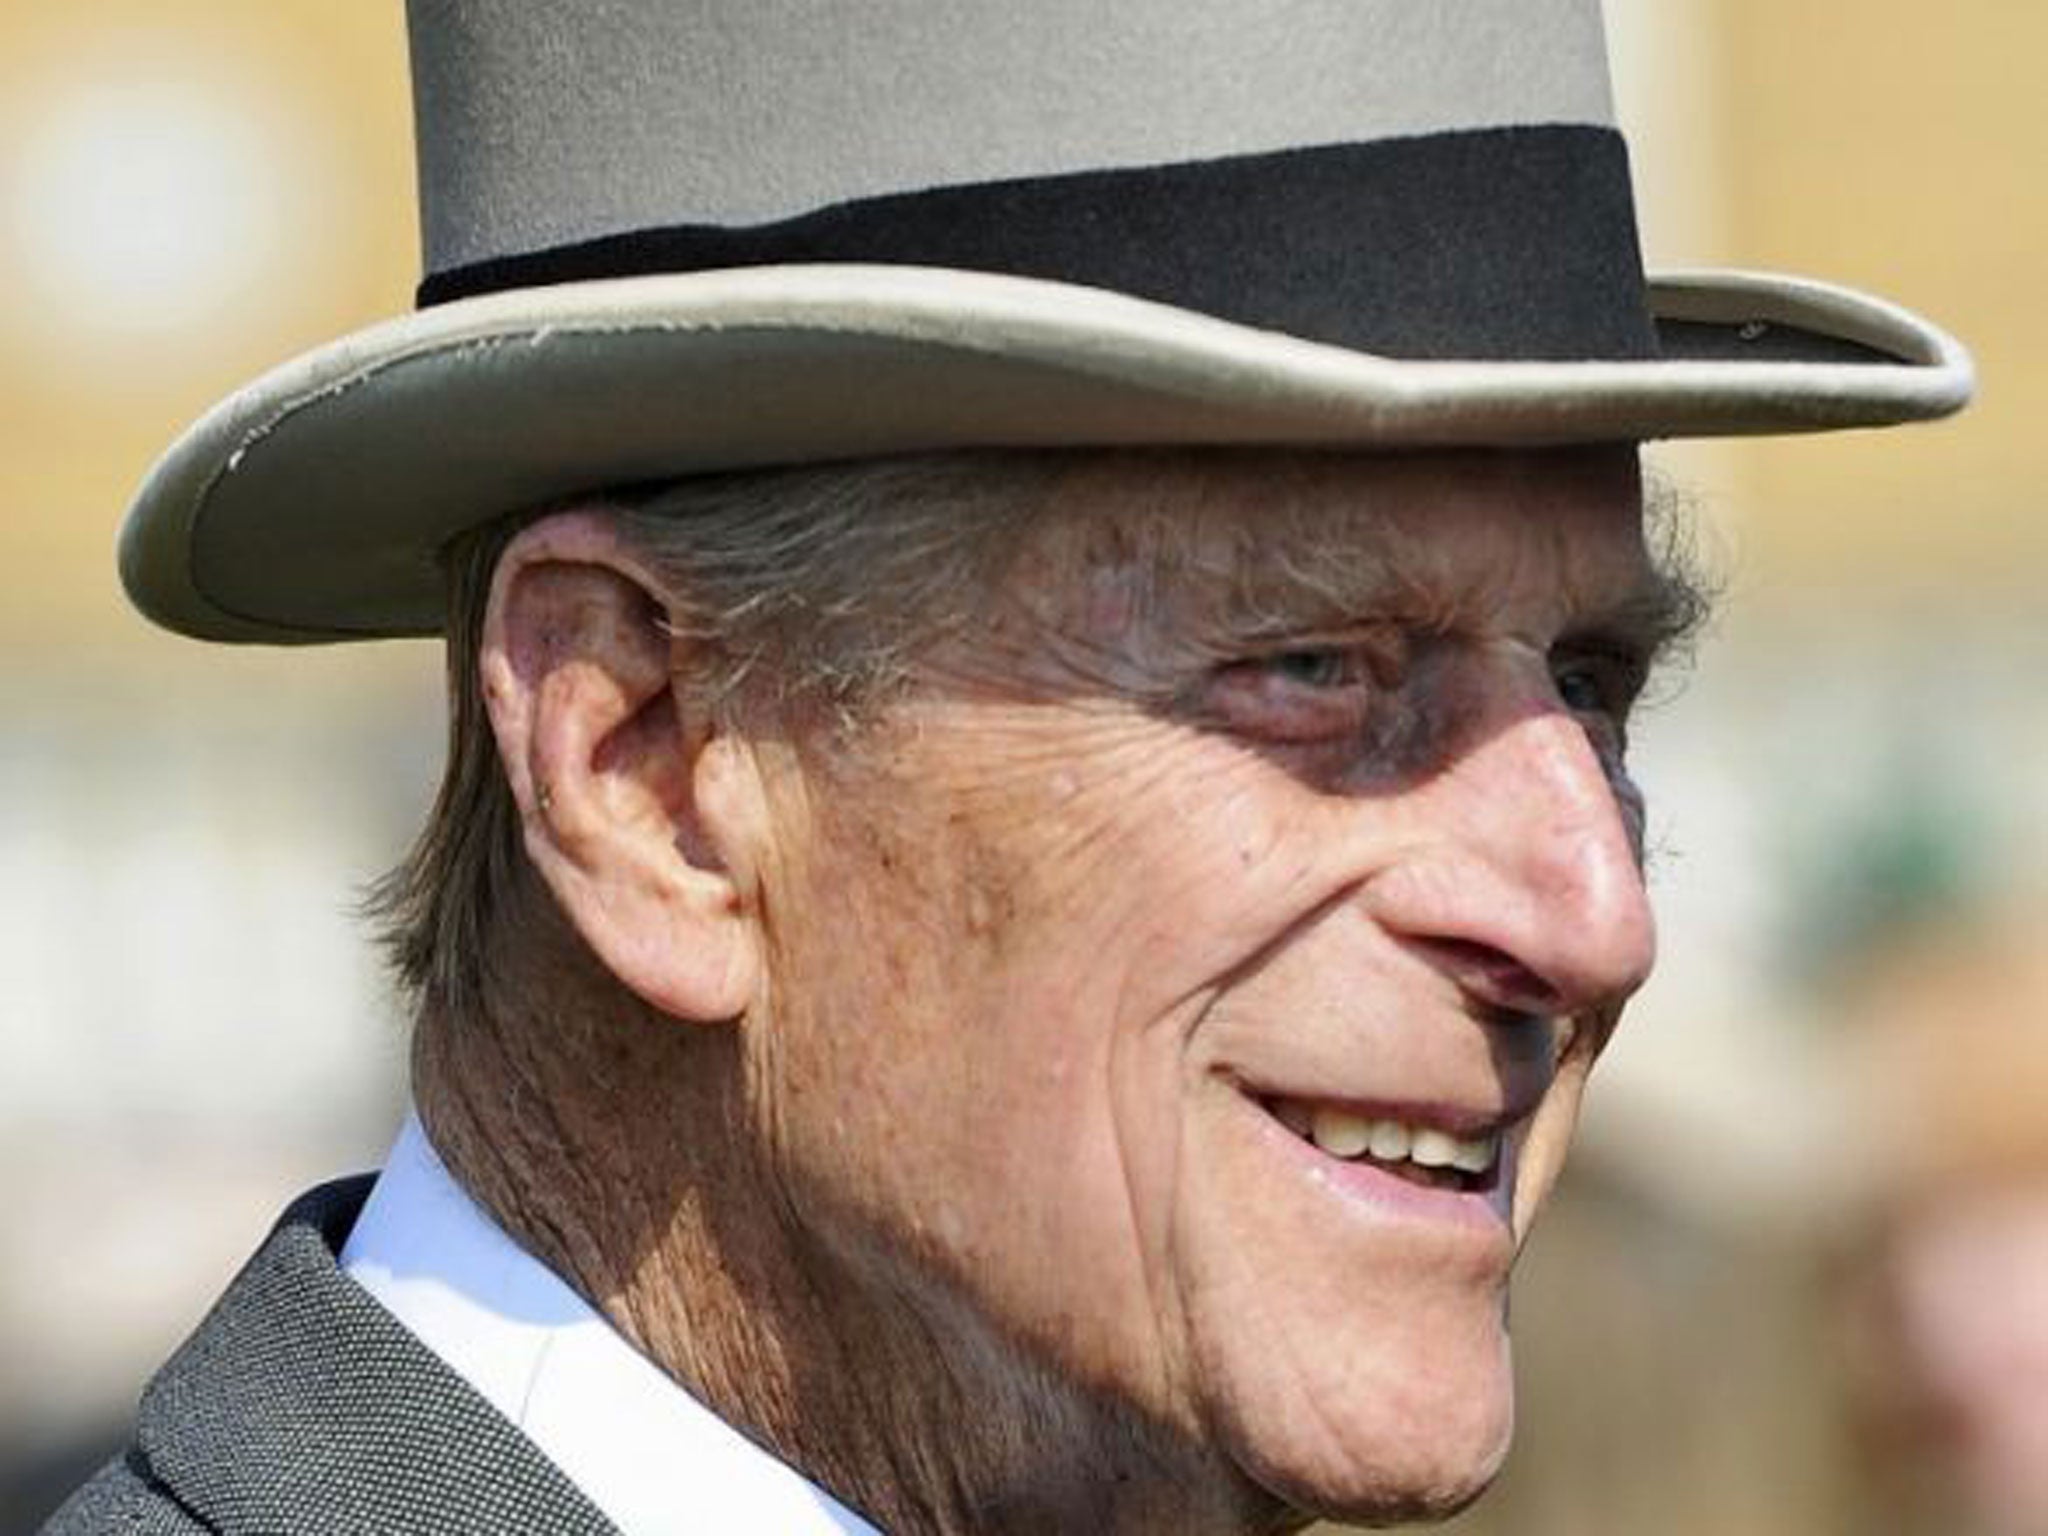 The Duke of Edinburgh is spending his 92nd birthday in hospital